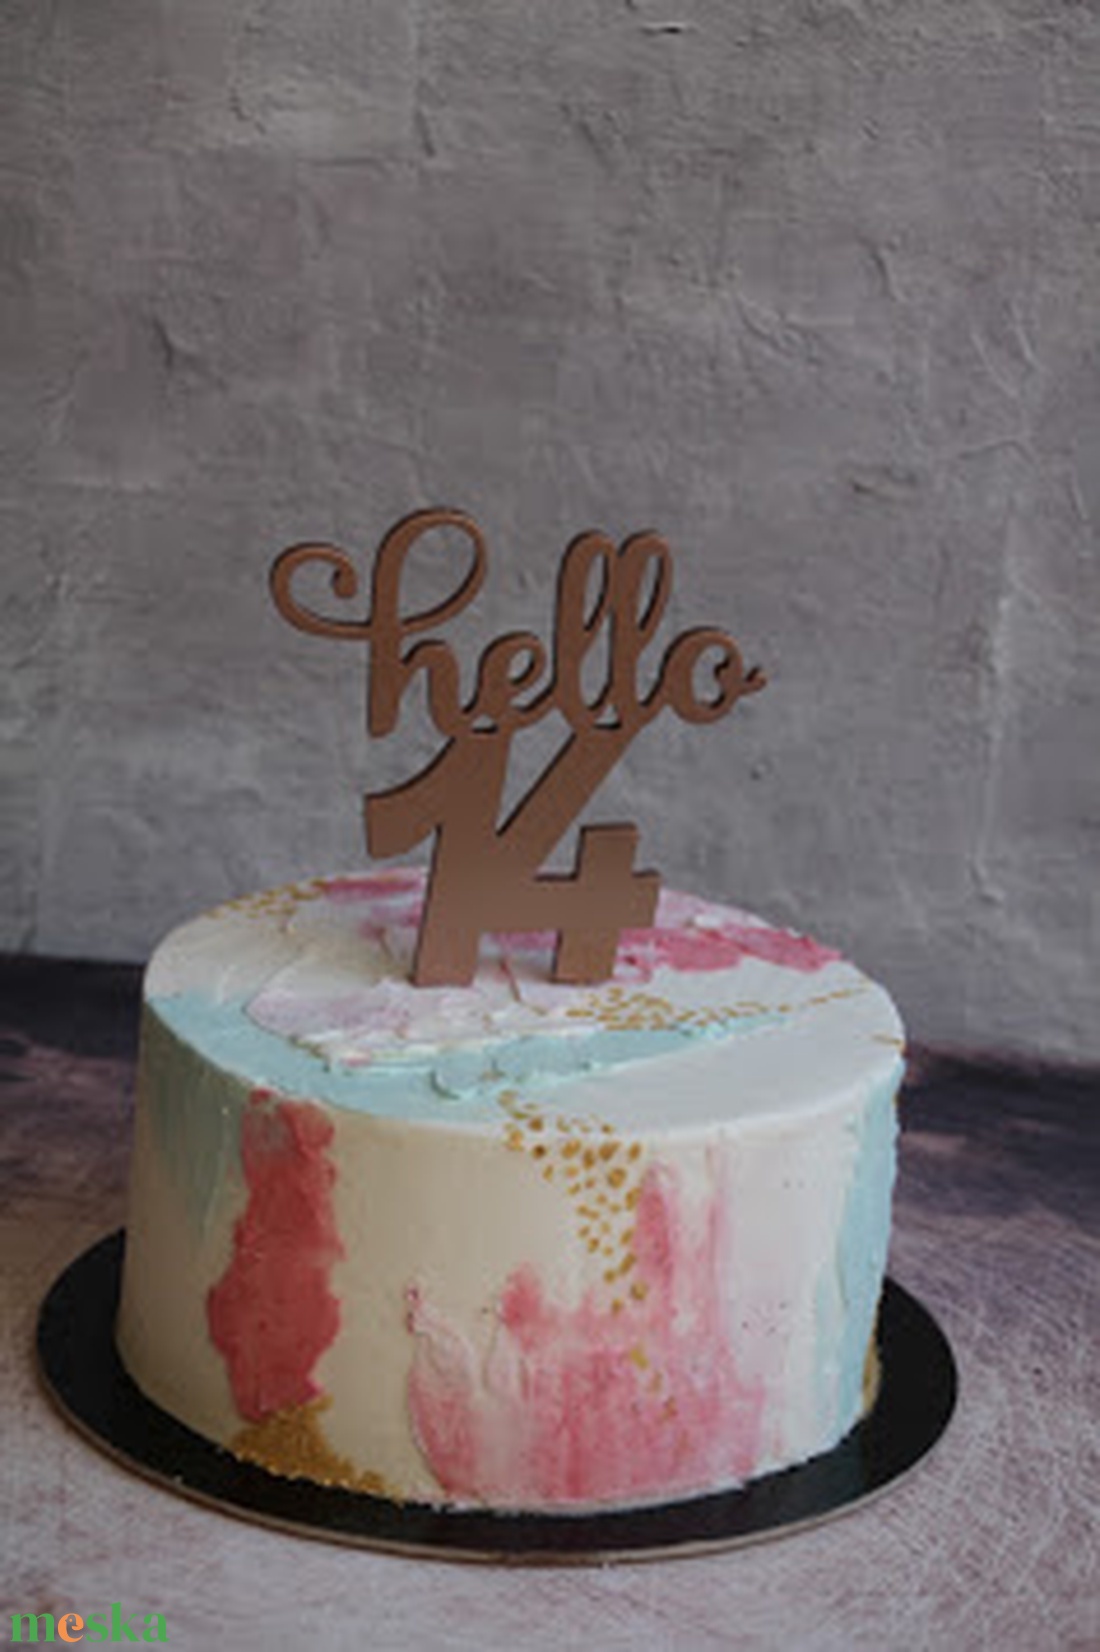 Hello 30, hello 50 születésnapi humoros tortadísz /hűtőmágnes Tortadekoráció Születésnapi tortadísz - otthon & lakás - konyhafelszerelés, tálalás - sütés, főzés - sütidísz - Meska.hu